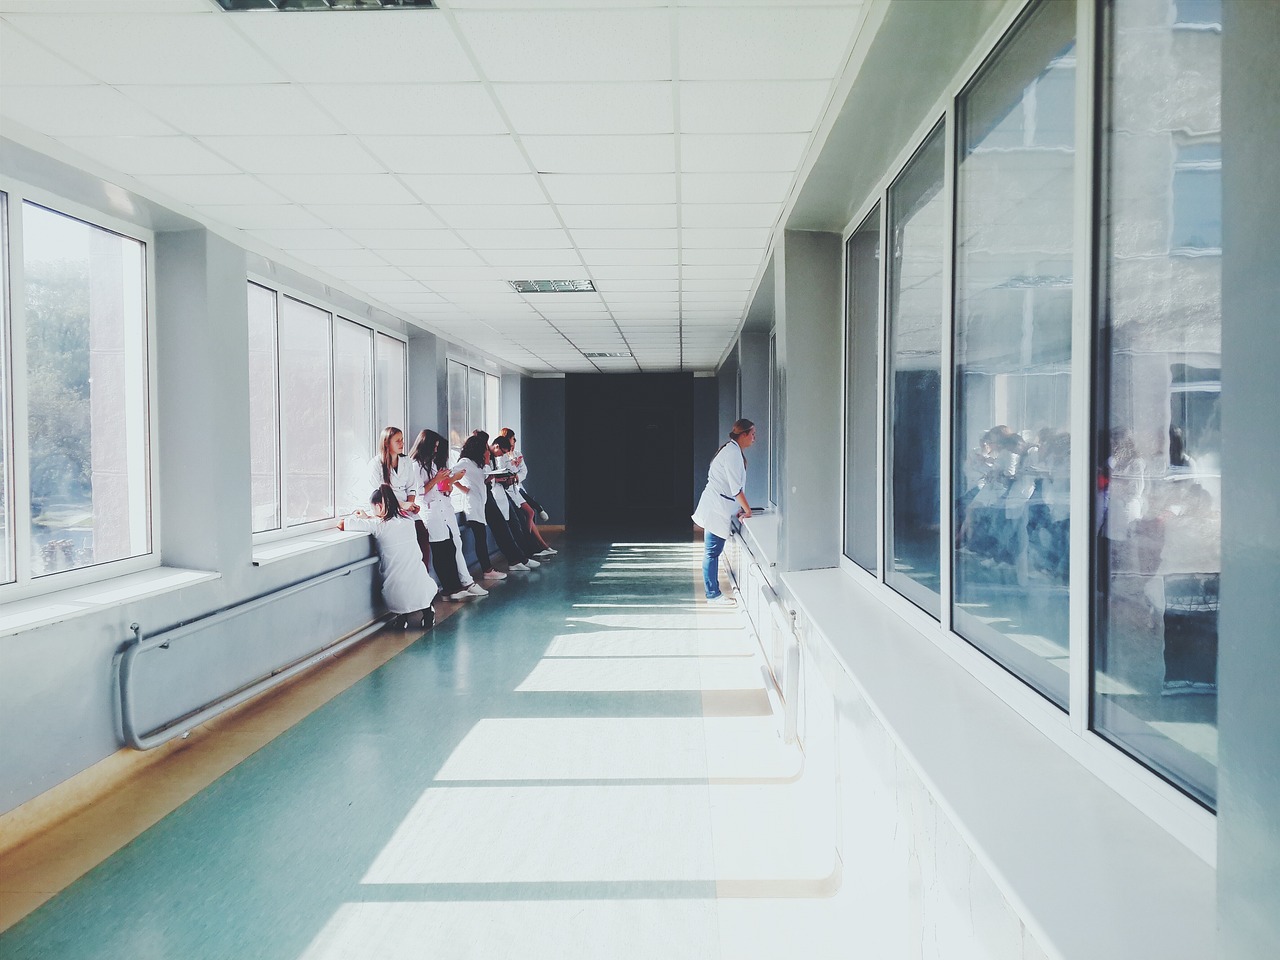 Nincs nővér, leállt az infarktusellátás az egyik budapesti kórházban